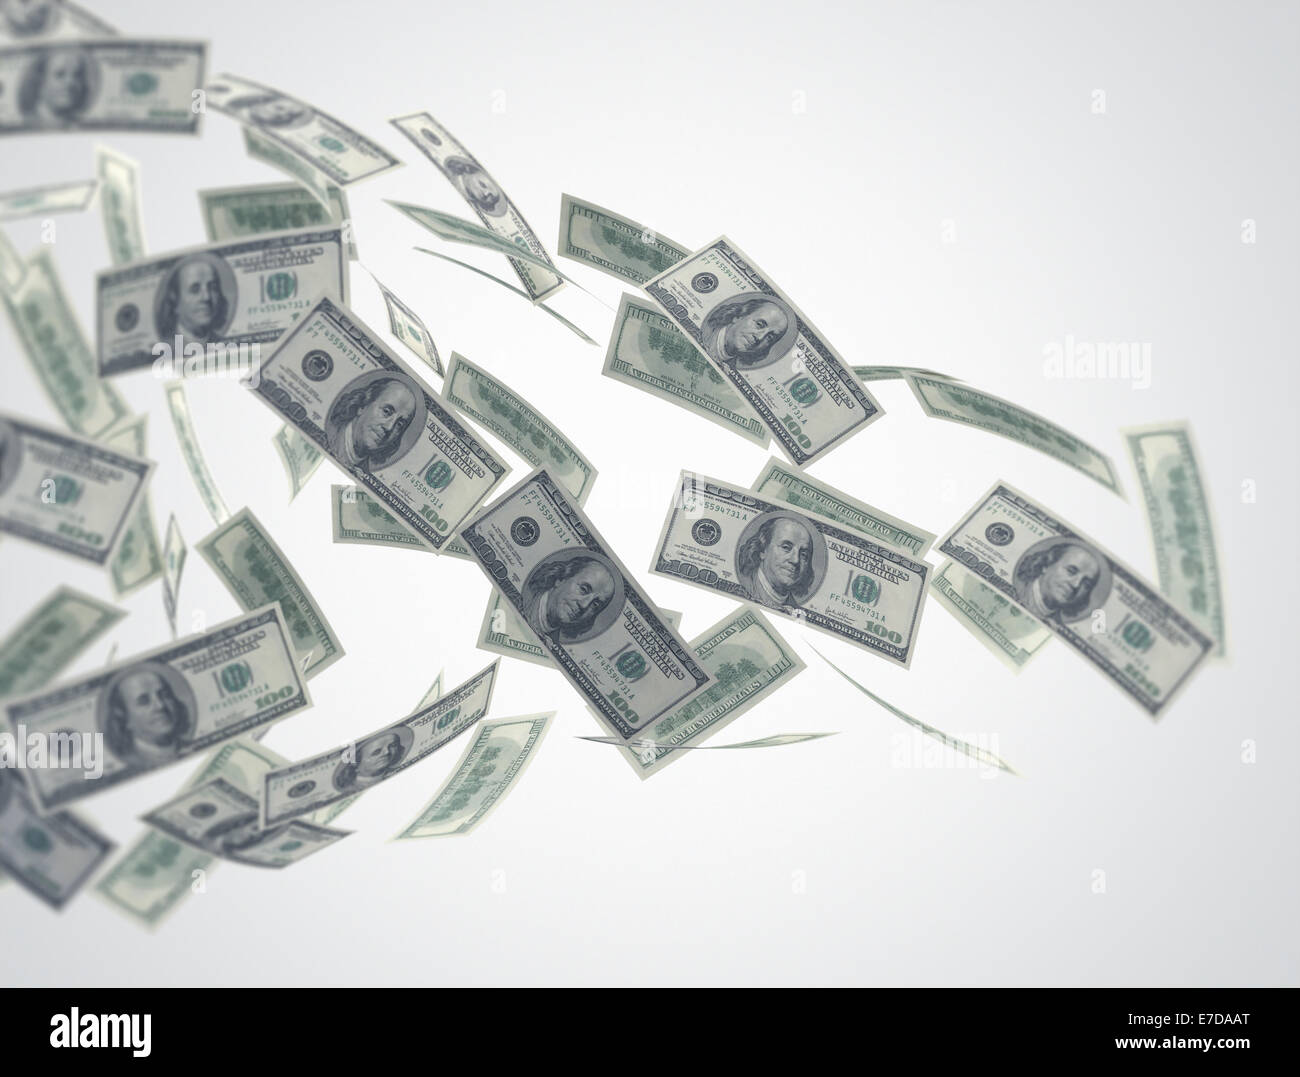 Money flow - US dollars Stock Photo